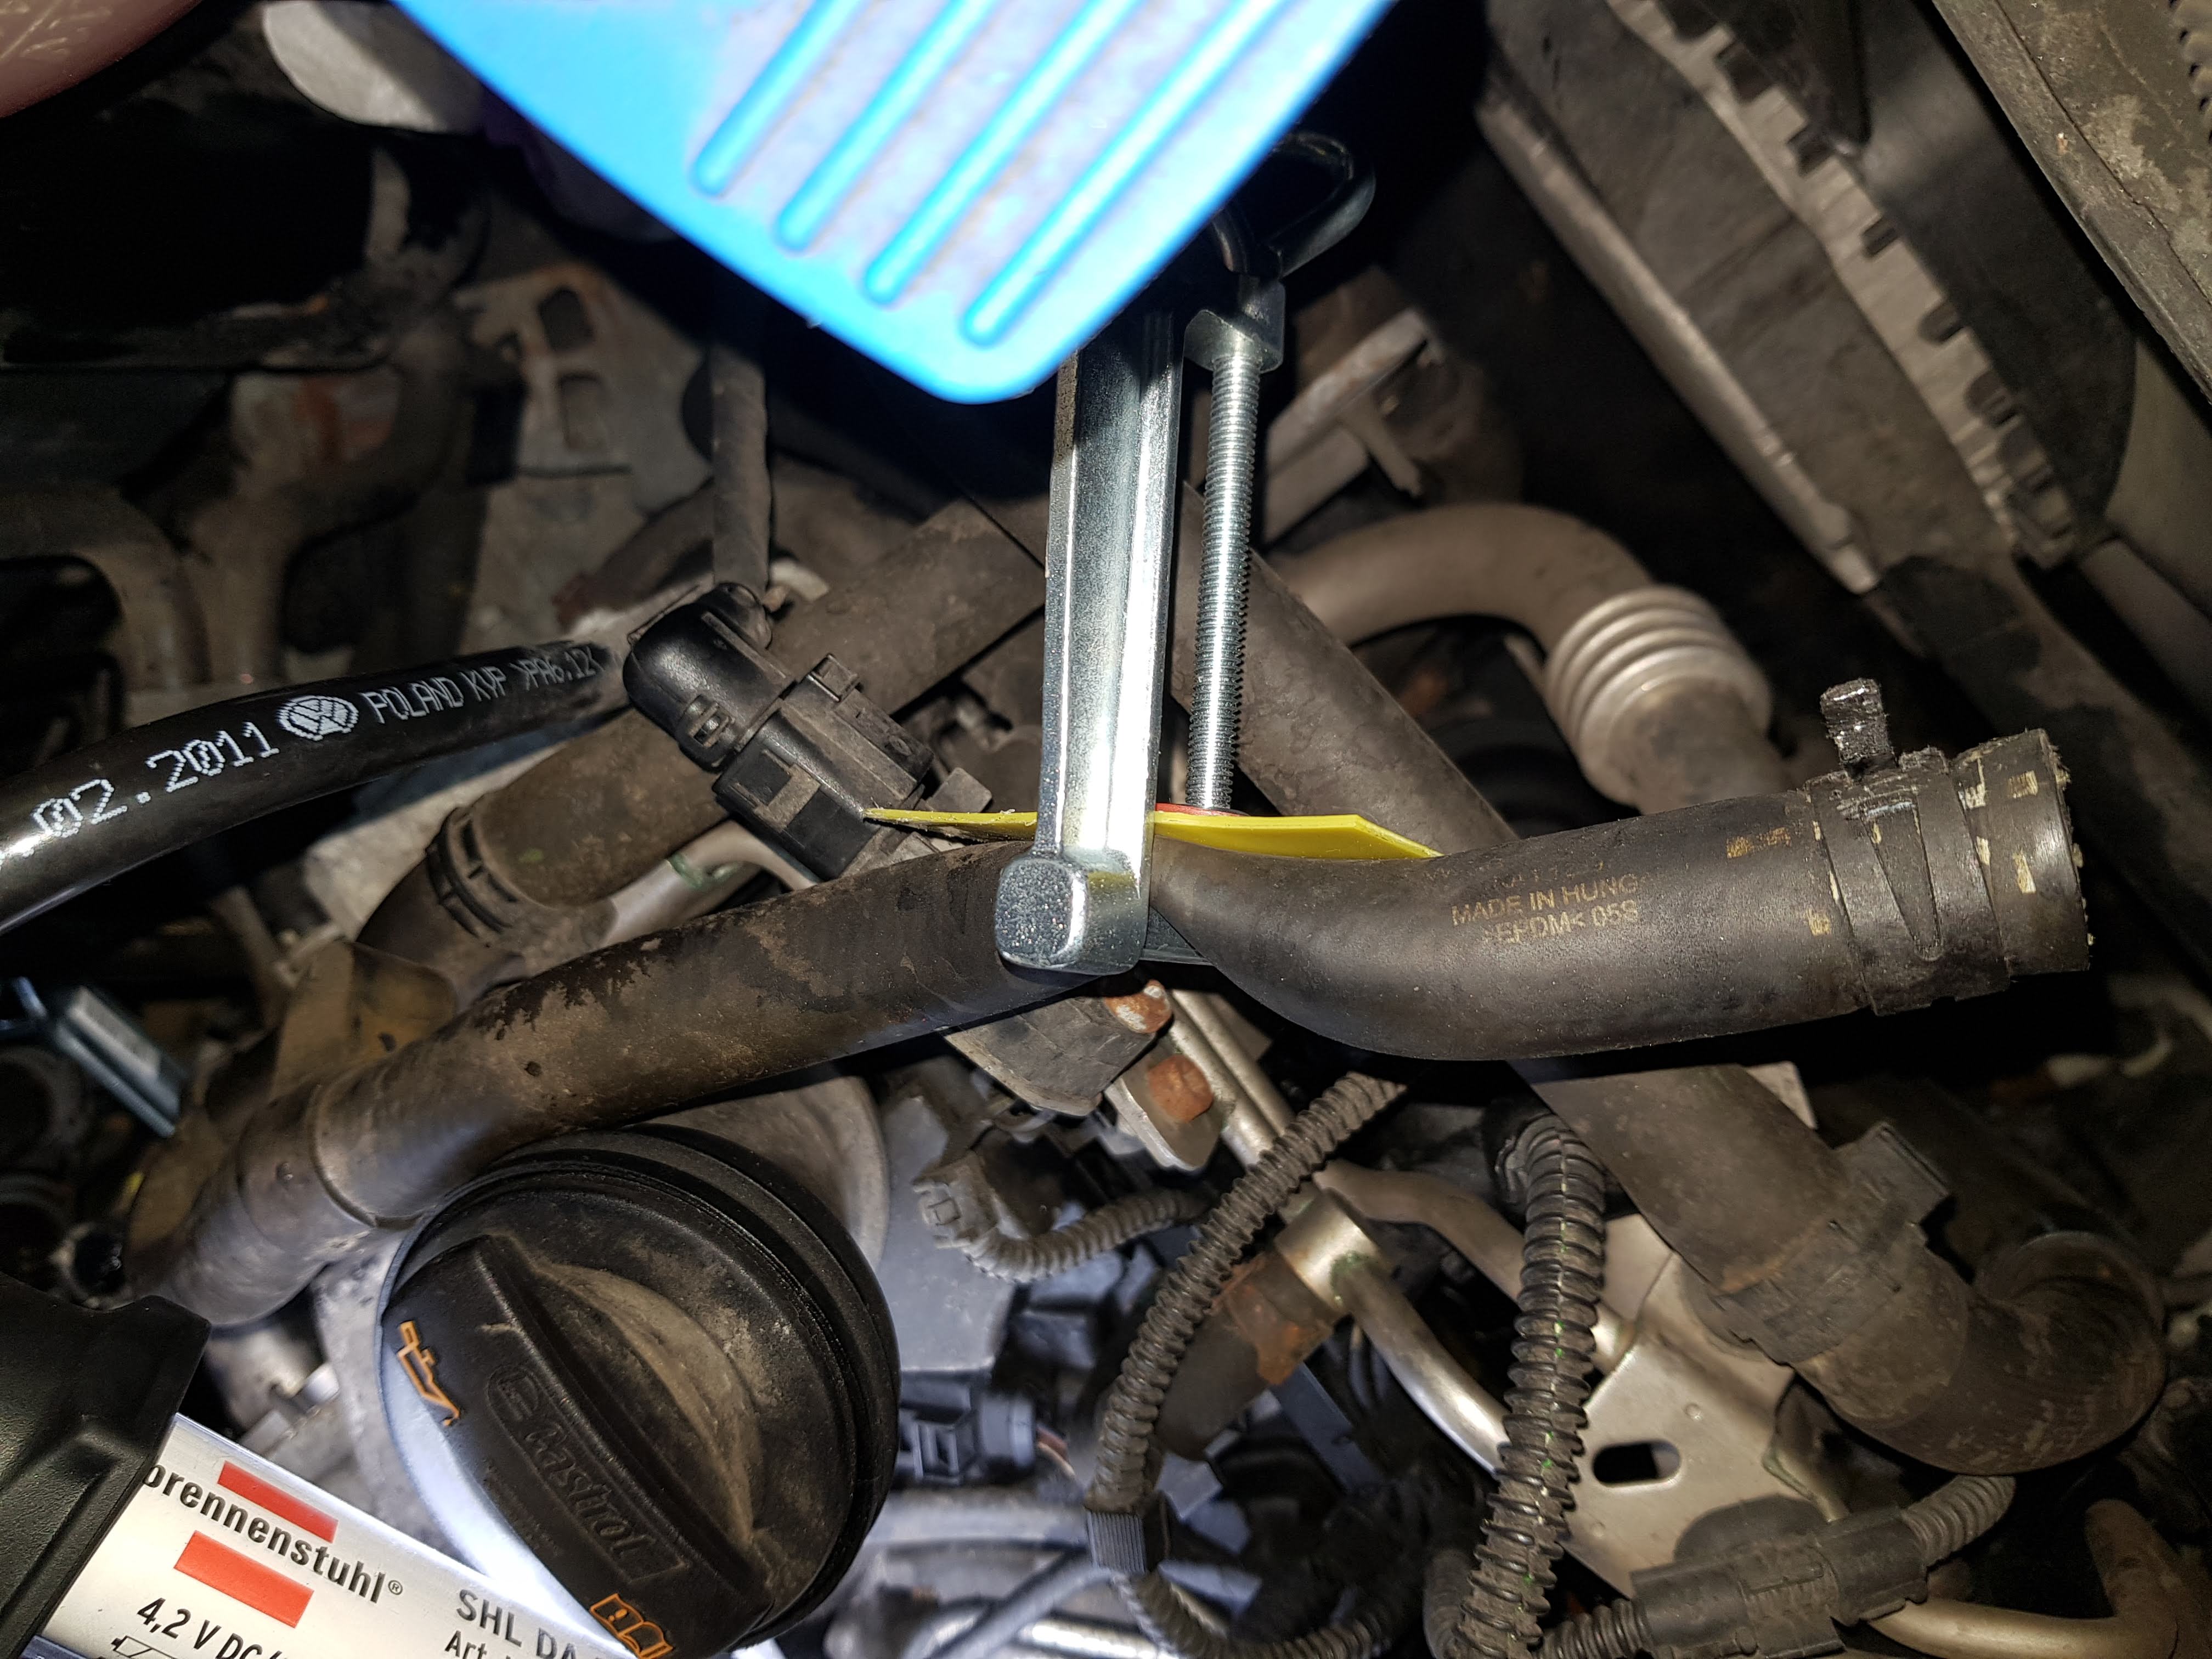 AGR-Ventil defekt: Motorprobleme vermeiden und AGR-Ventil reinigen